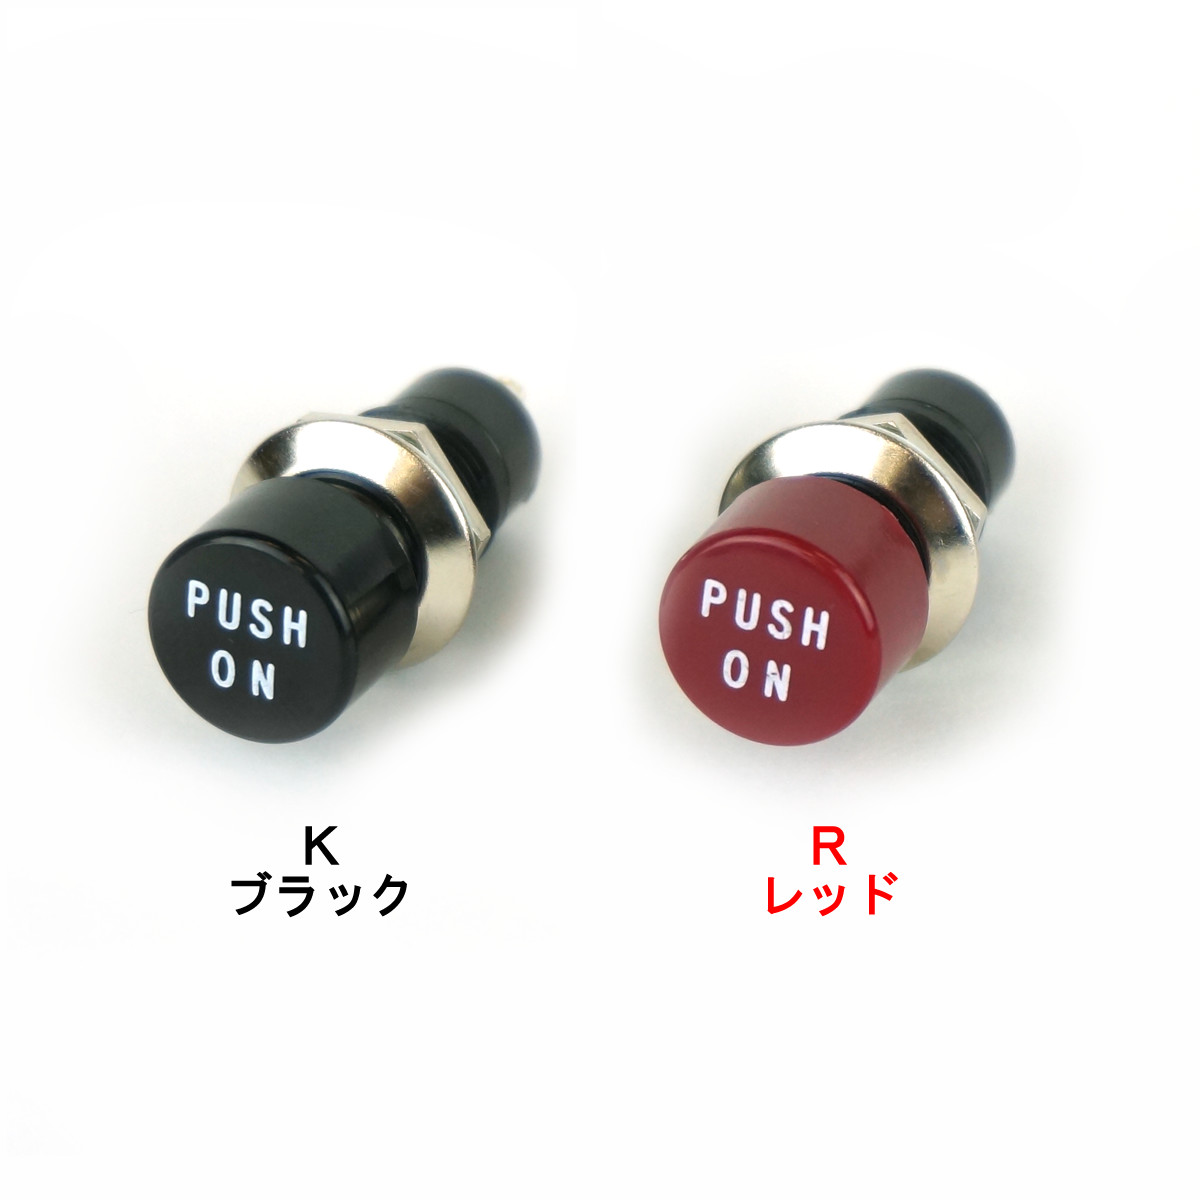 押しボタン 丸型 ネジ式 サービス・テストスイッチ用 「PUSH ON」表示付 【MS-030】